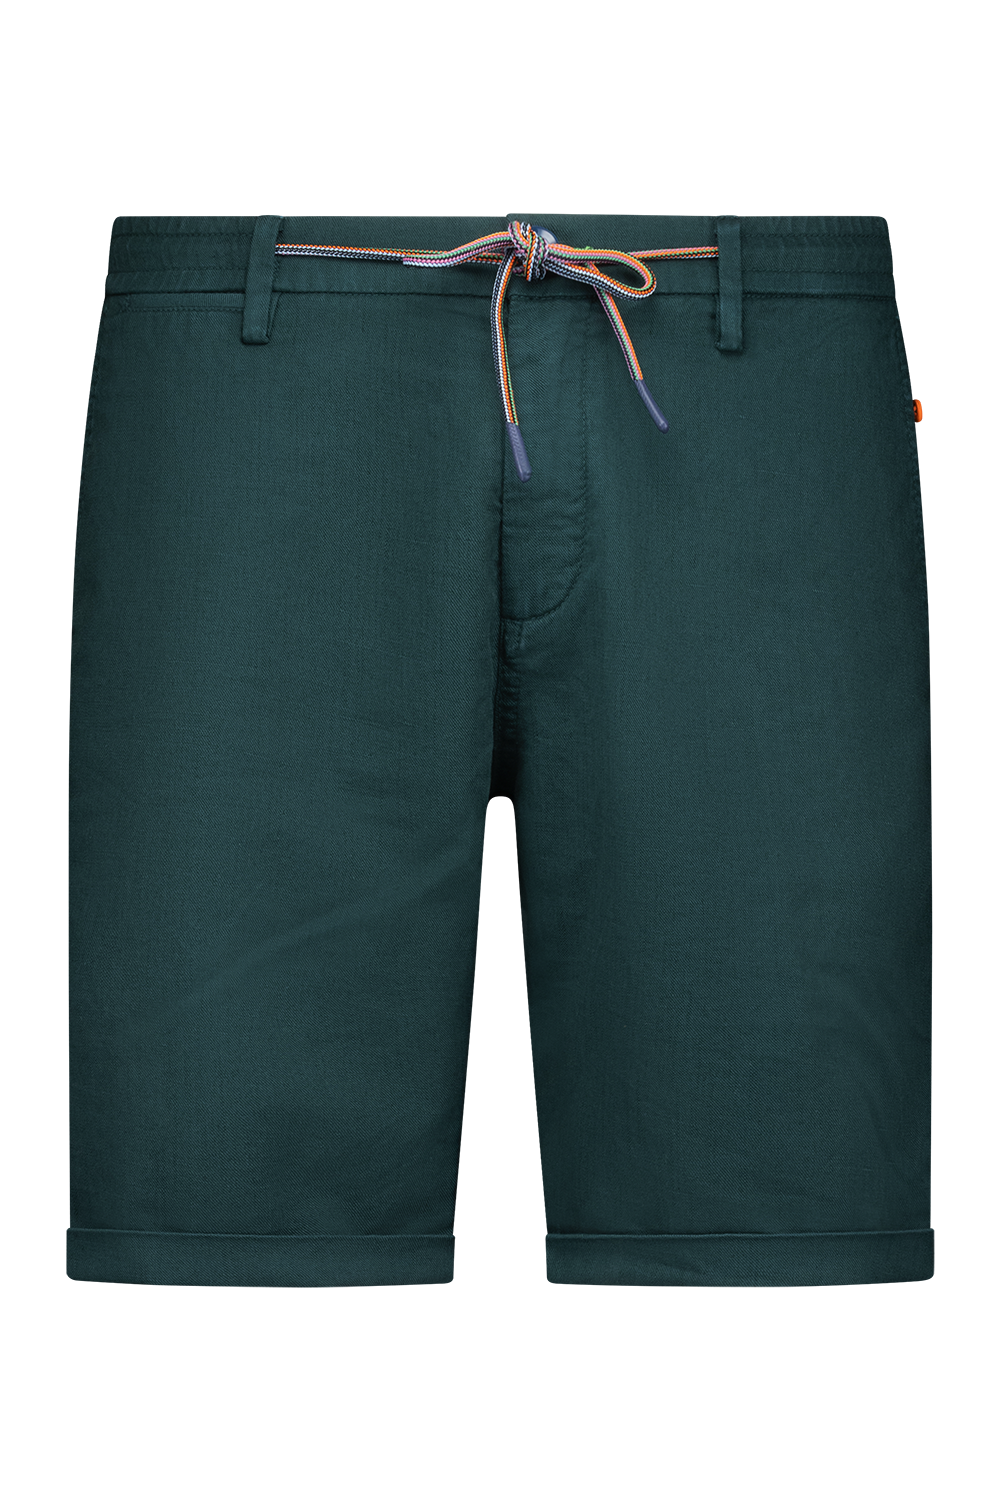 Leinen Shorts - Classic Green